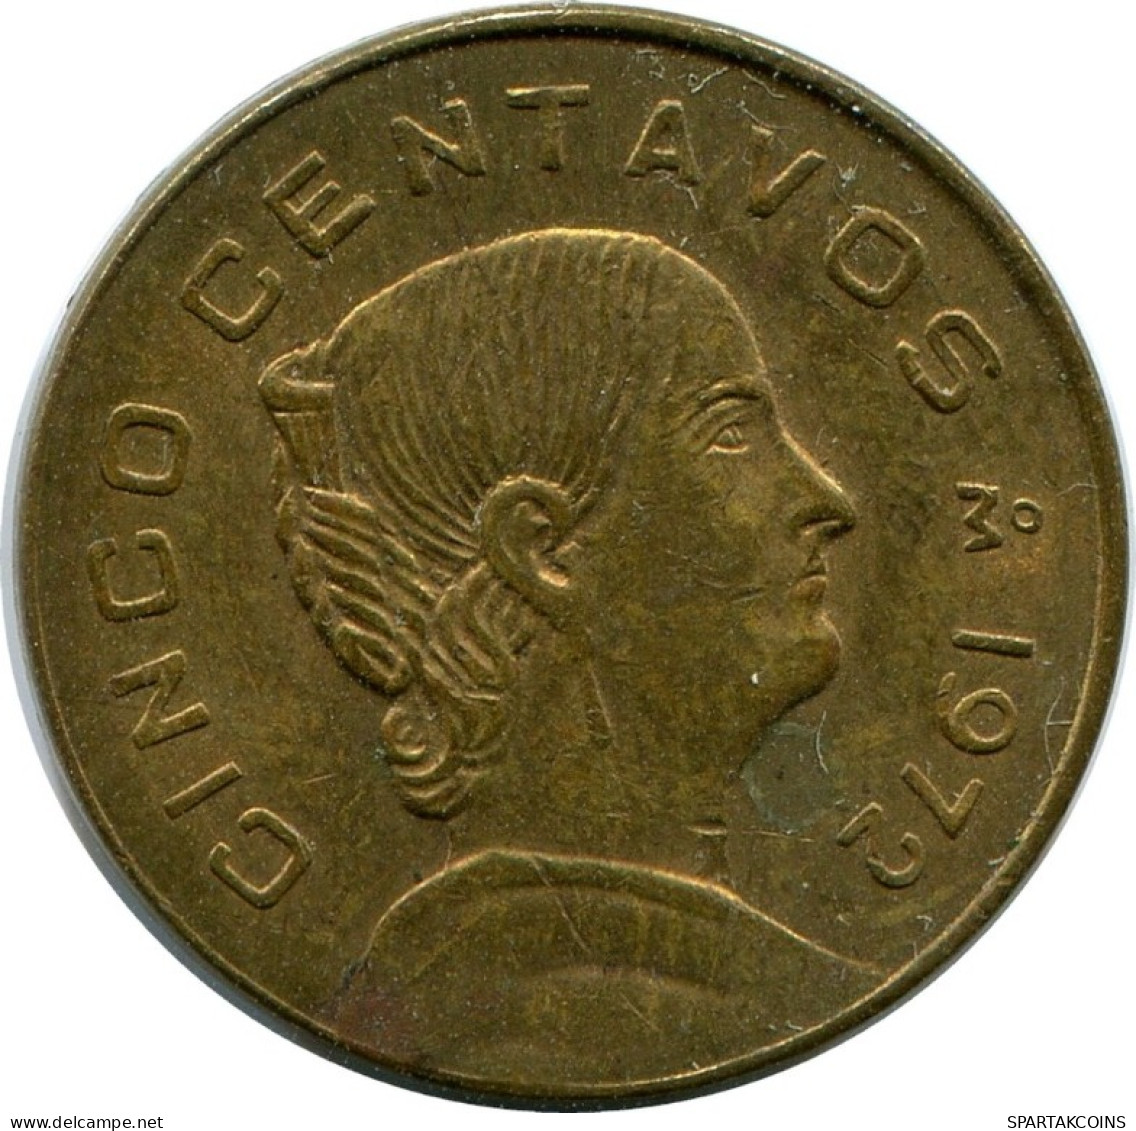 5 CENTAVOS 1972 MEXICO Coin #AH423.5.U.A - México